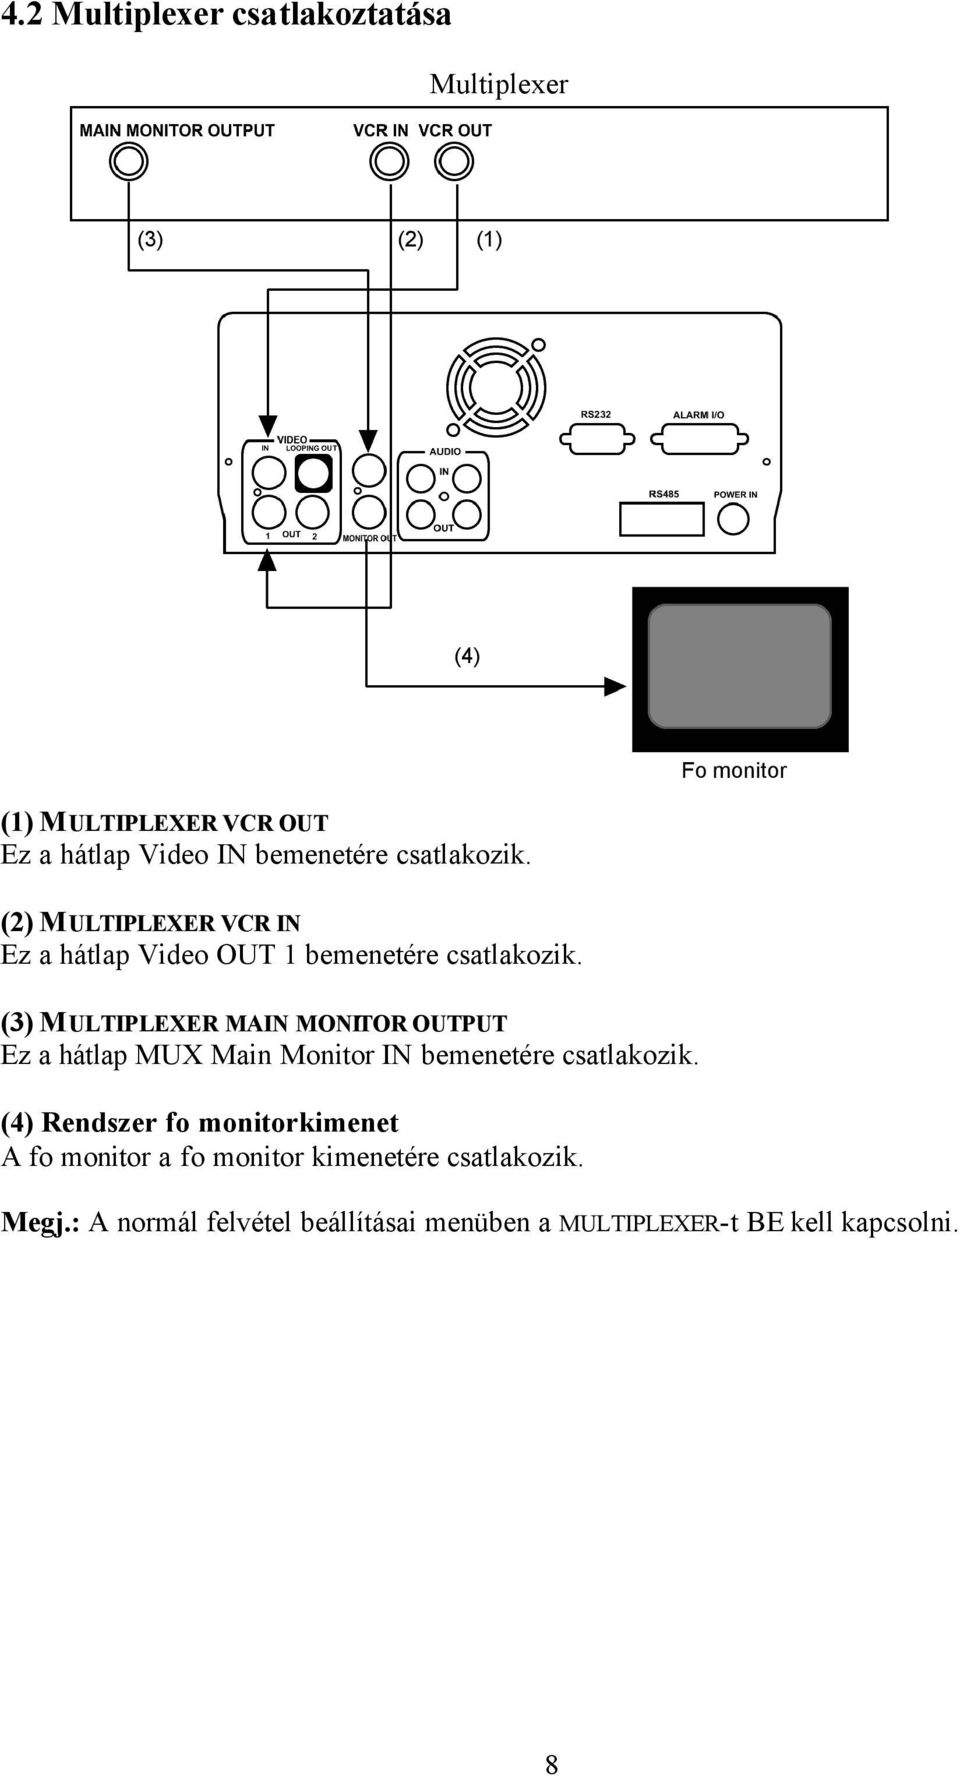 (3) MULTIPLEXER MAIN MONITOR OUTPUT Ez a hátlap MUX Main Monitor IN bemenetére csatlakozik.